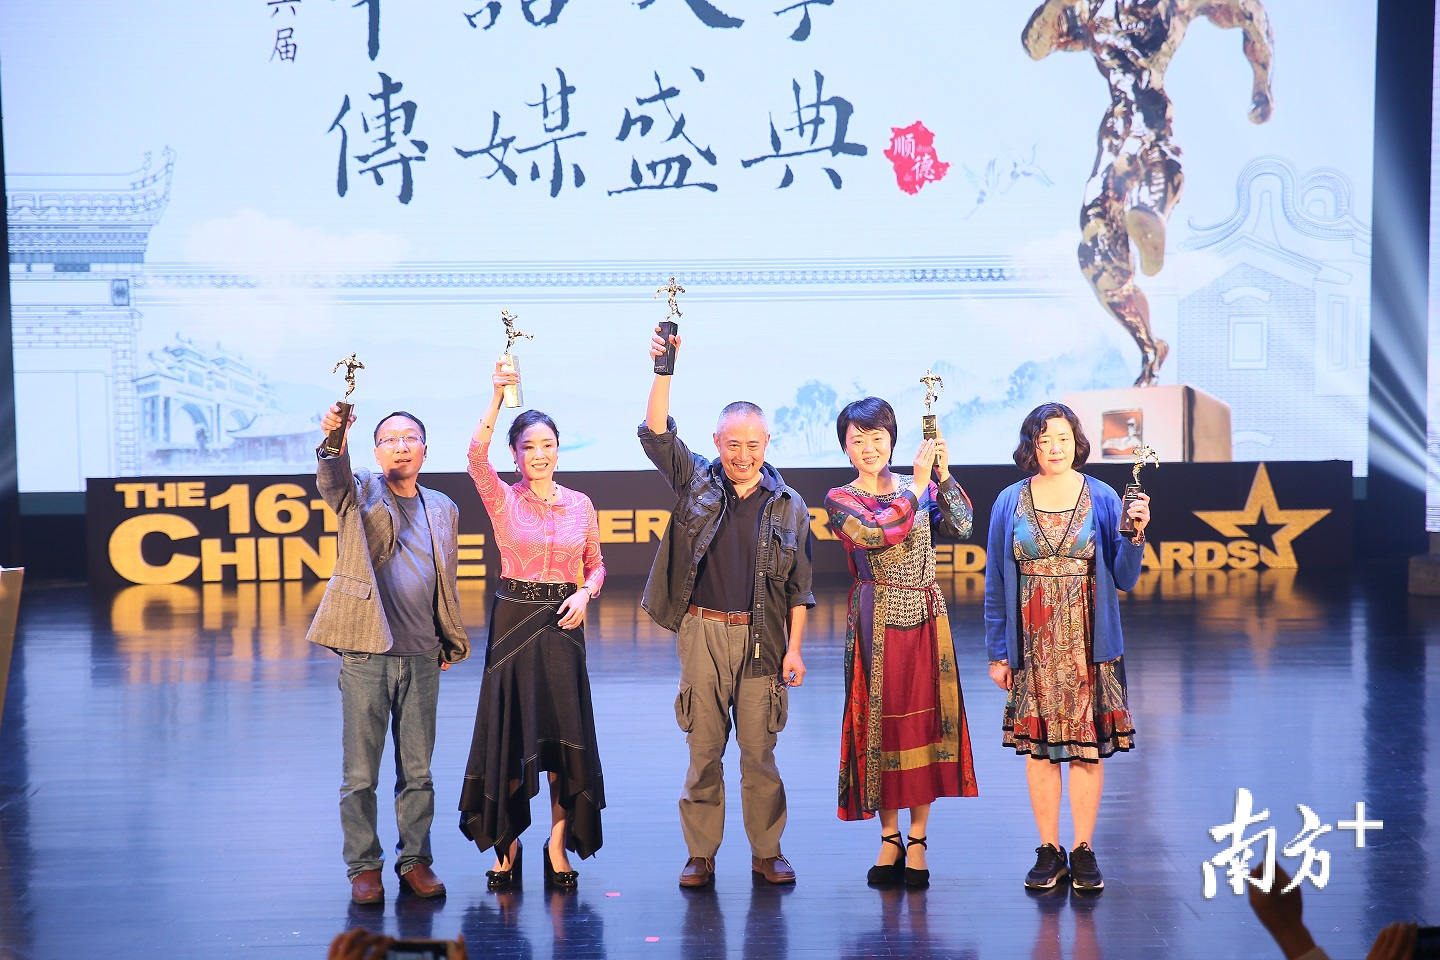 五位获奖者合影，左起：敬文东、严歌苓、叶兆言、周晓枫、蓝蓝。欧阳少伟 摄